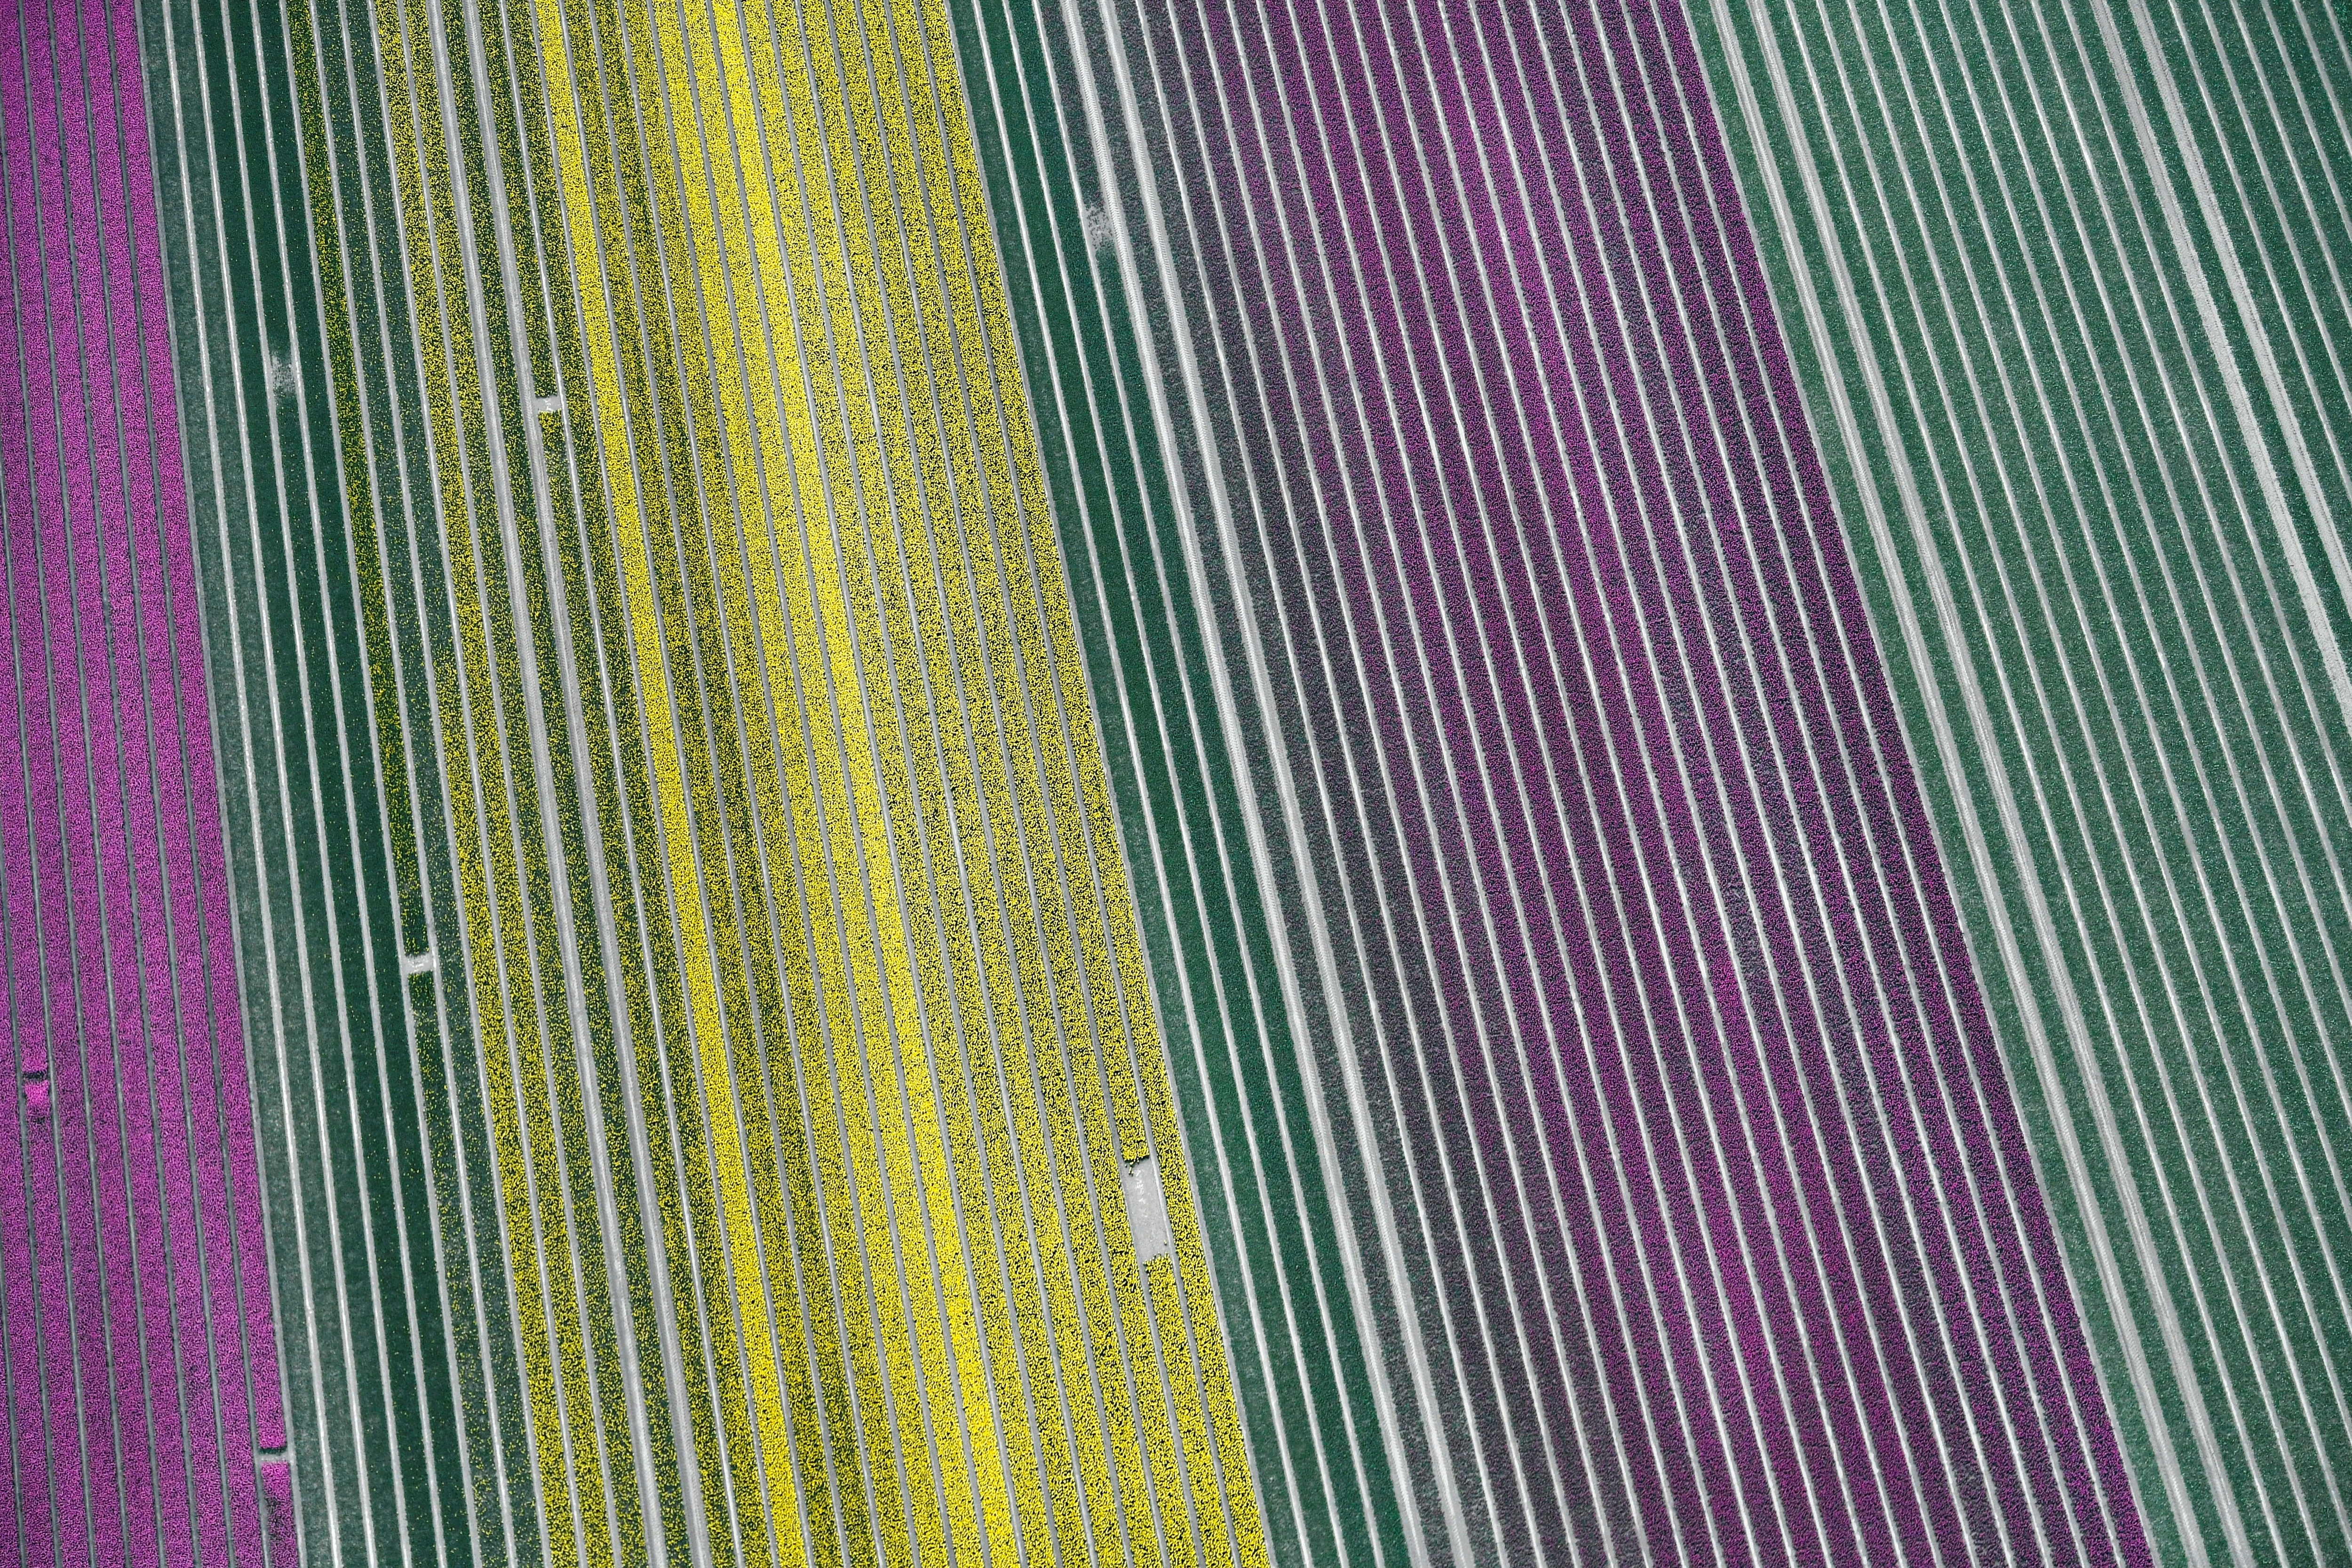 Luchtfoto van tulpenvelden (Reuters)